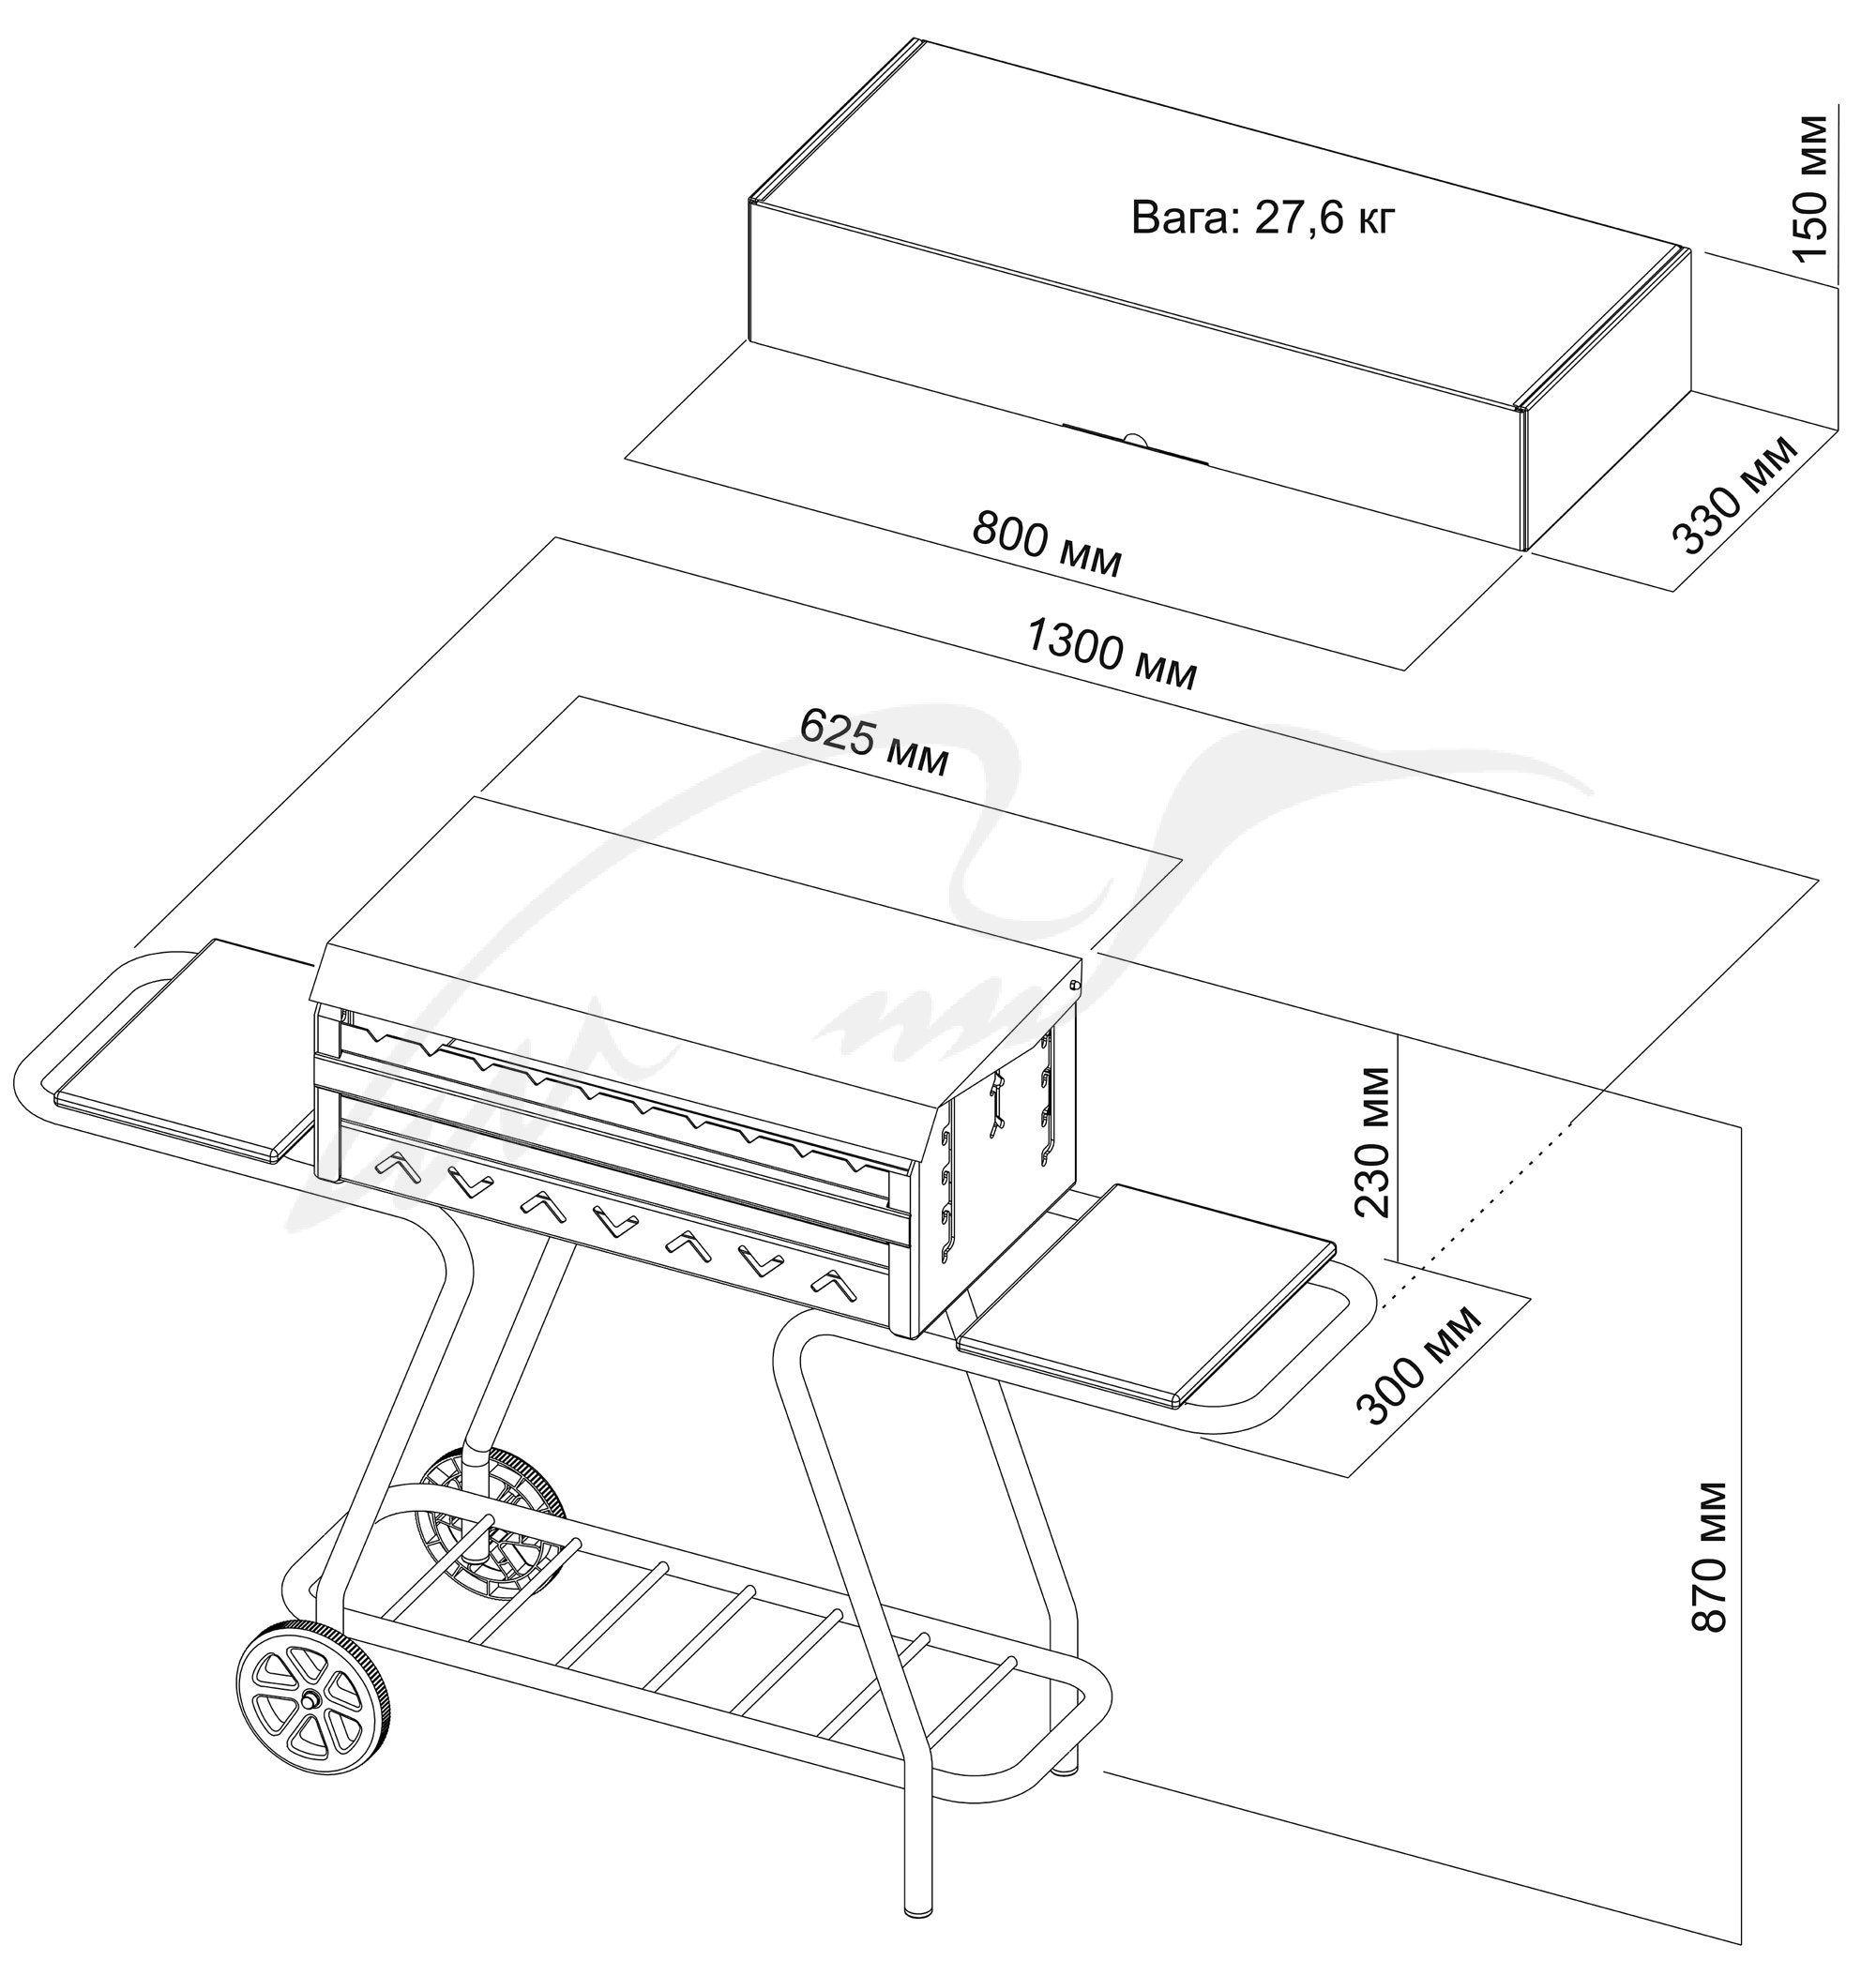 Мангал Mousson Vulcan Box маобильны-стационар на колесах